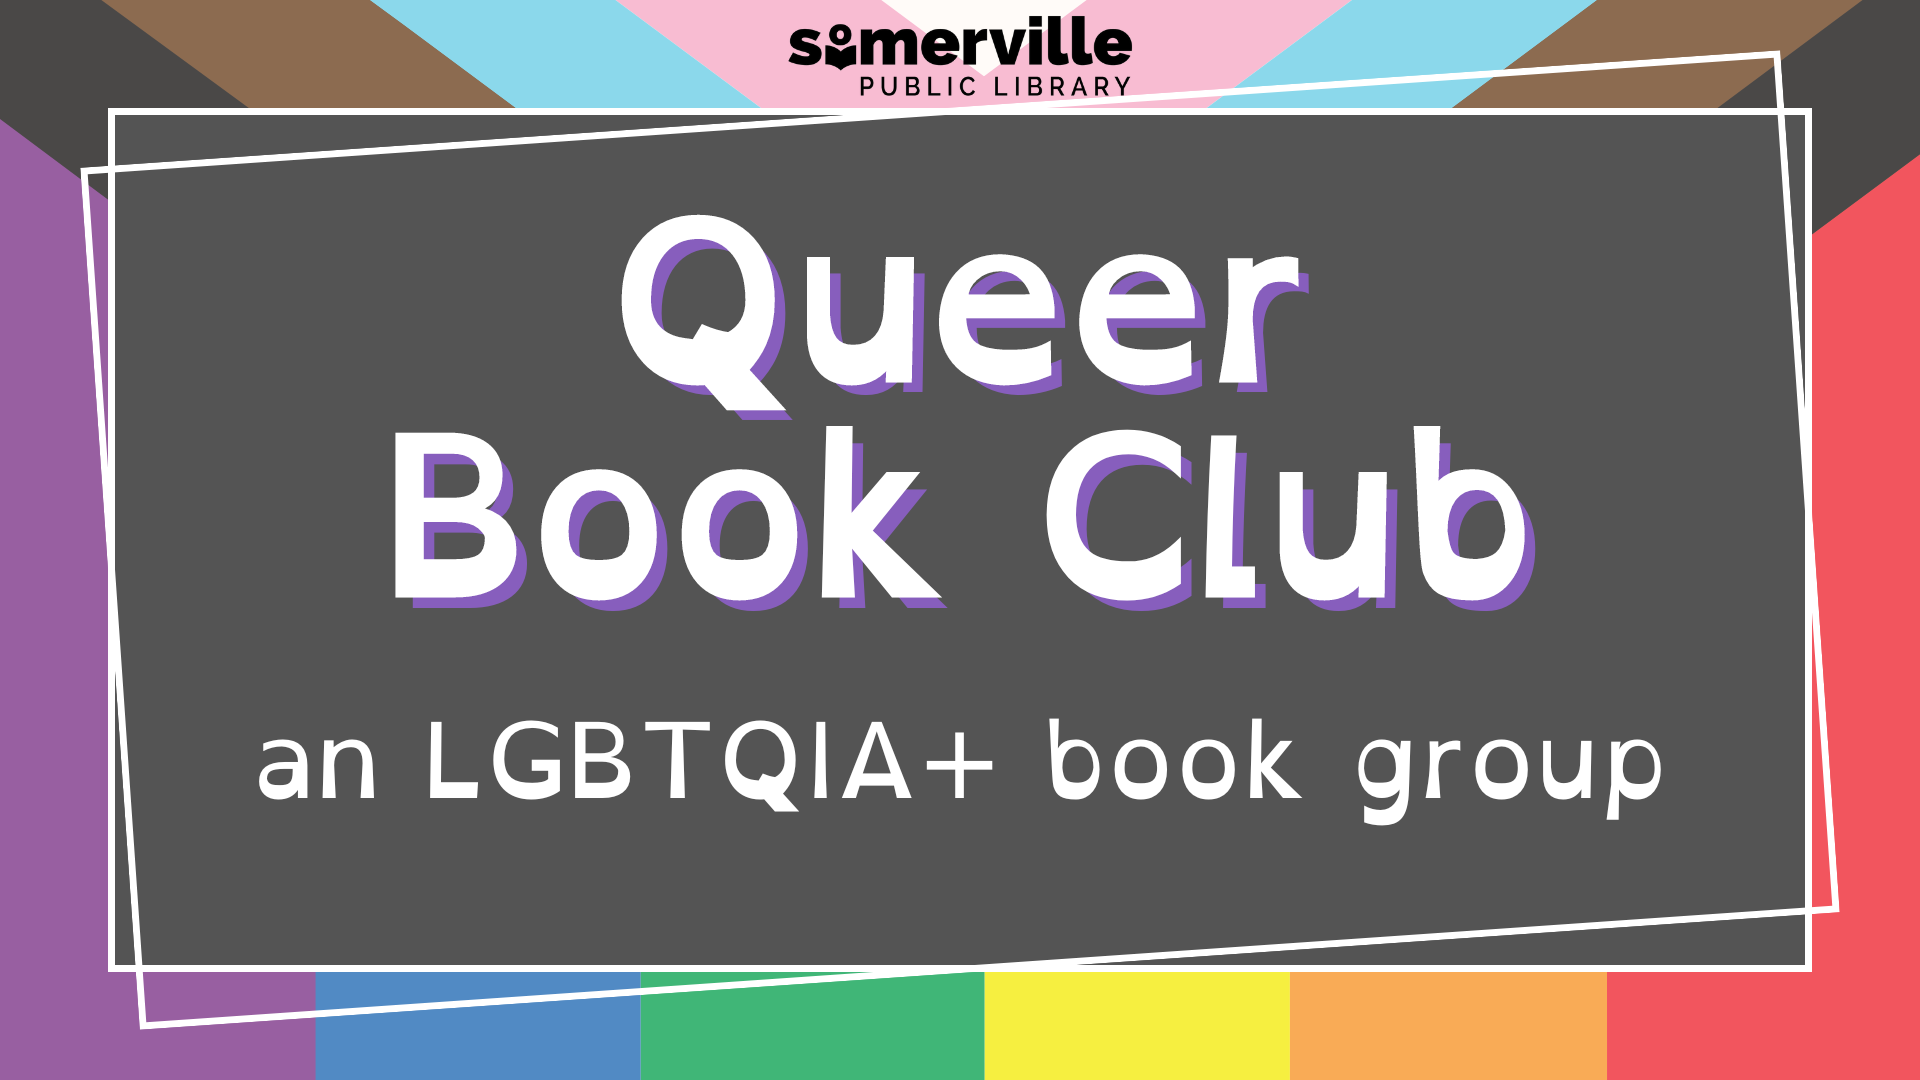 transcript: Queer book club. An LGBTQIA+ book group.